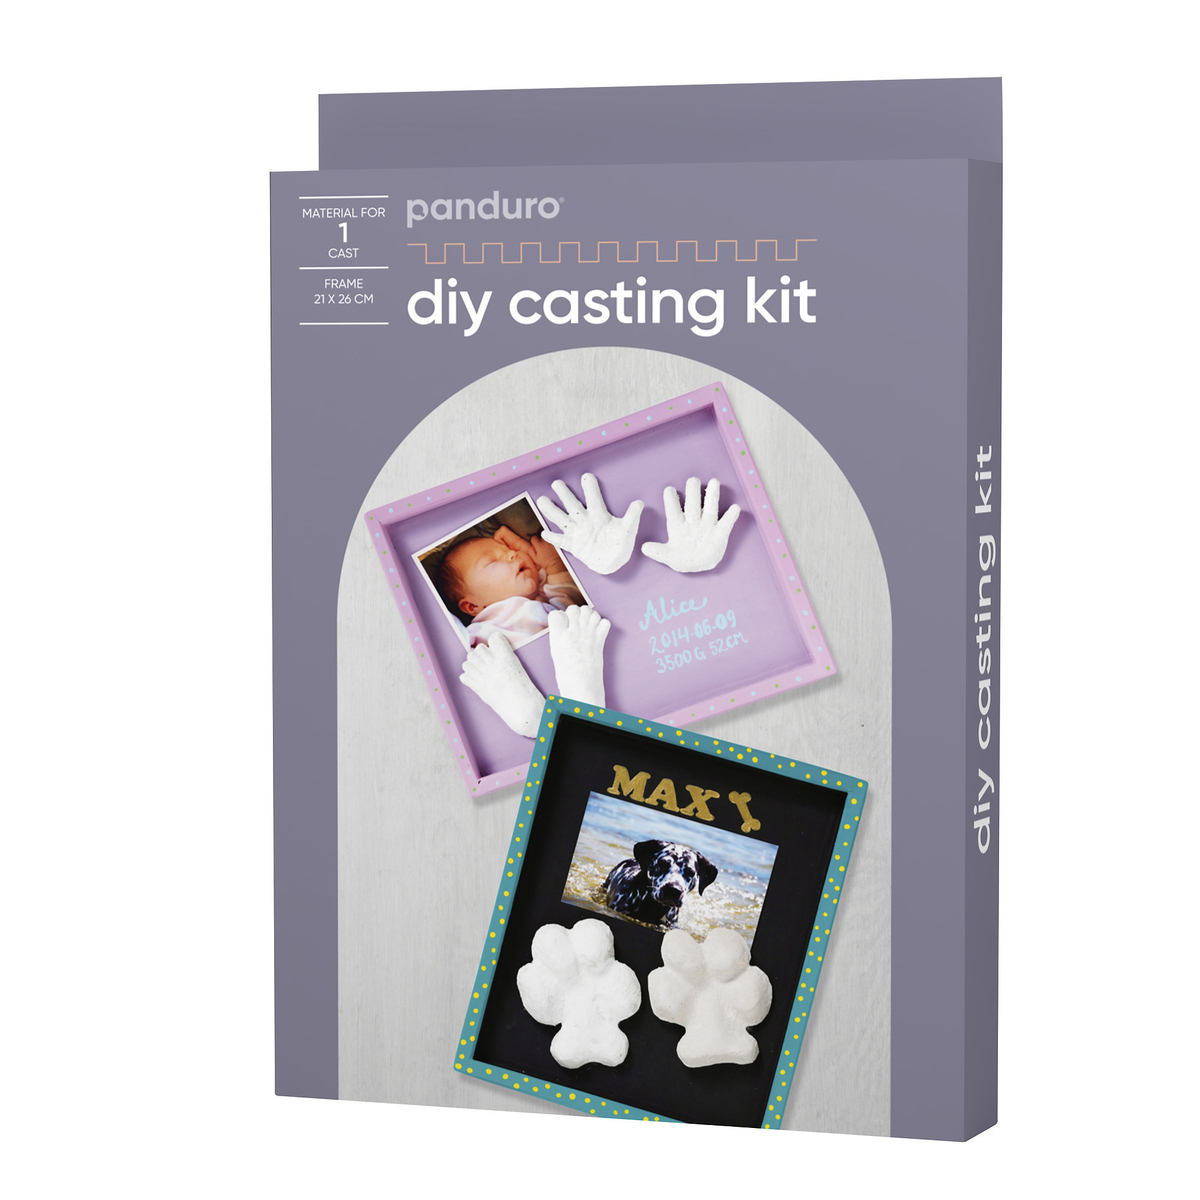 Diy casting kit materialsats